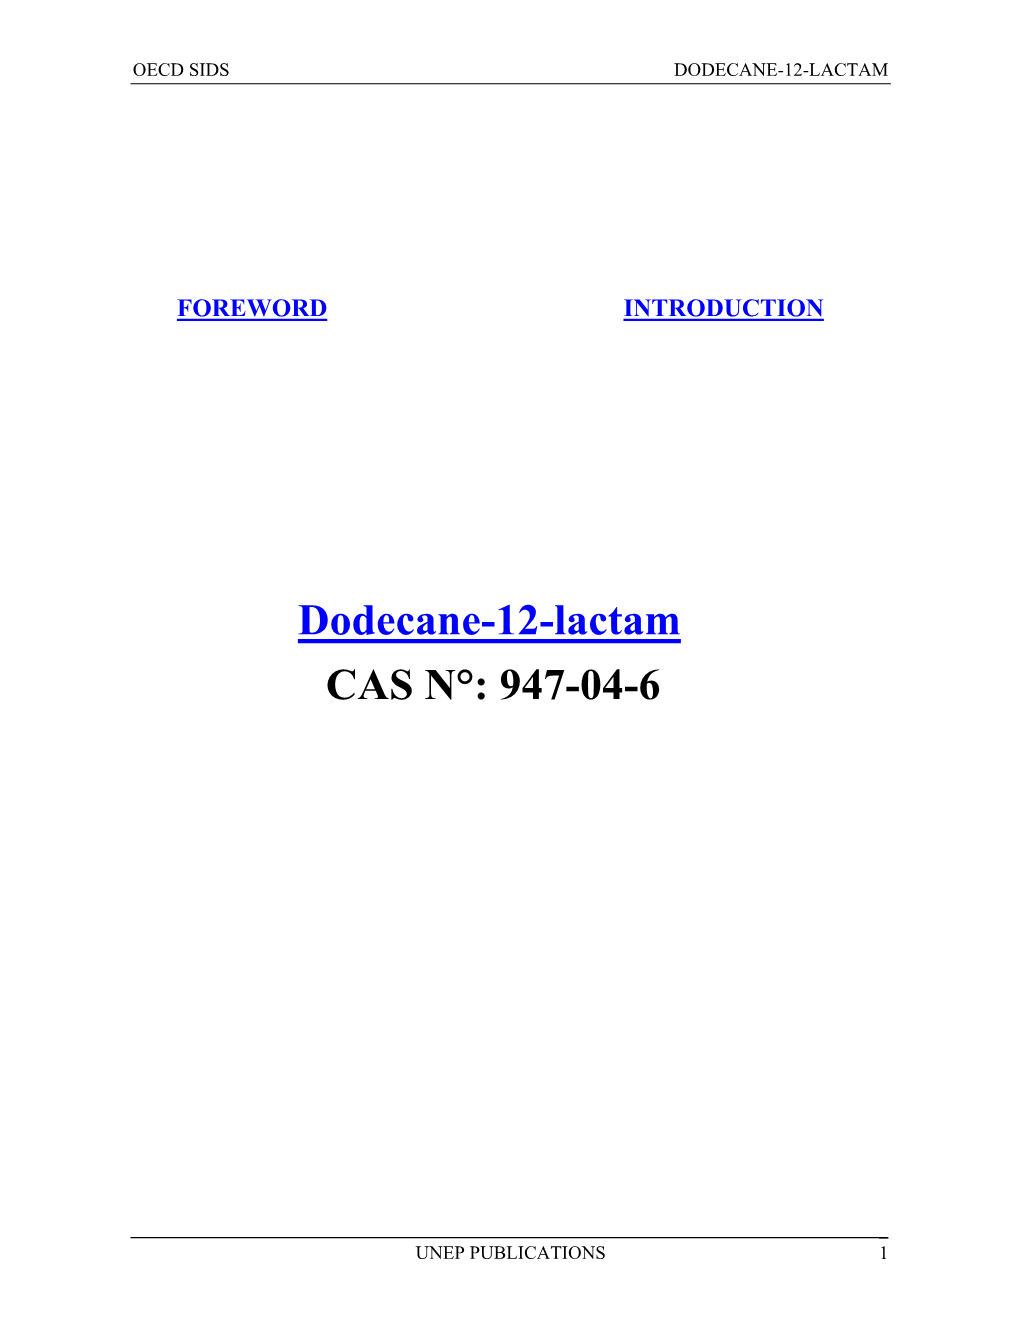 Dodecane-12-Lactam CAS N°: 947-04-6